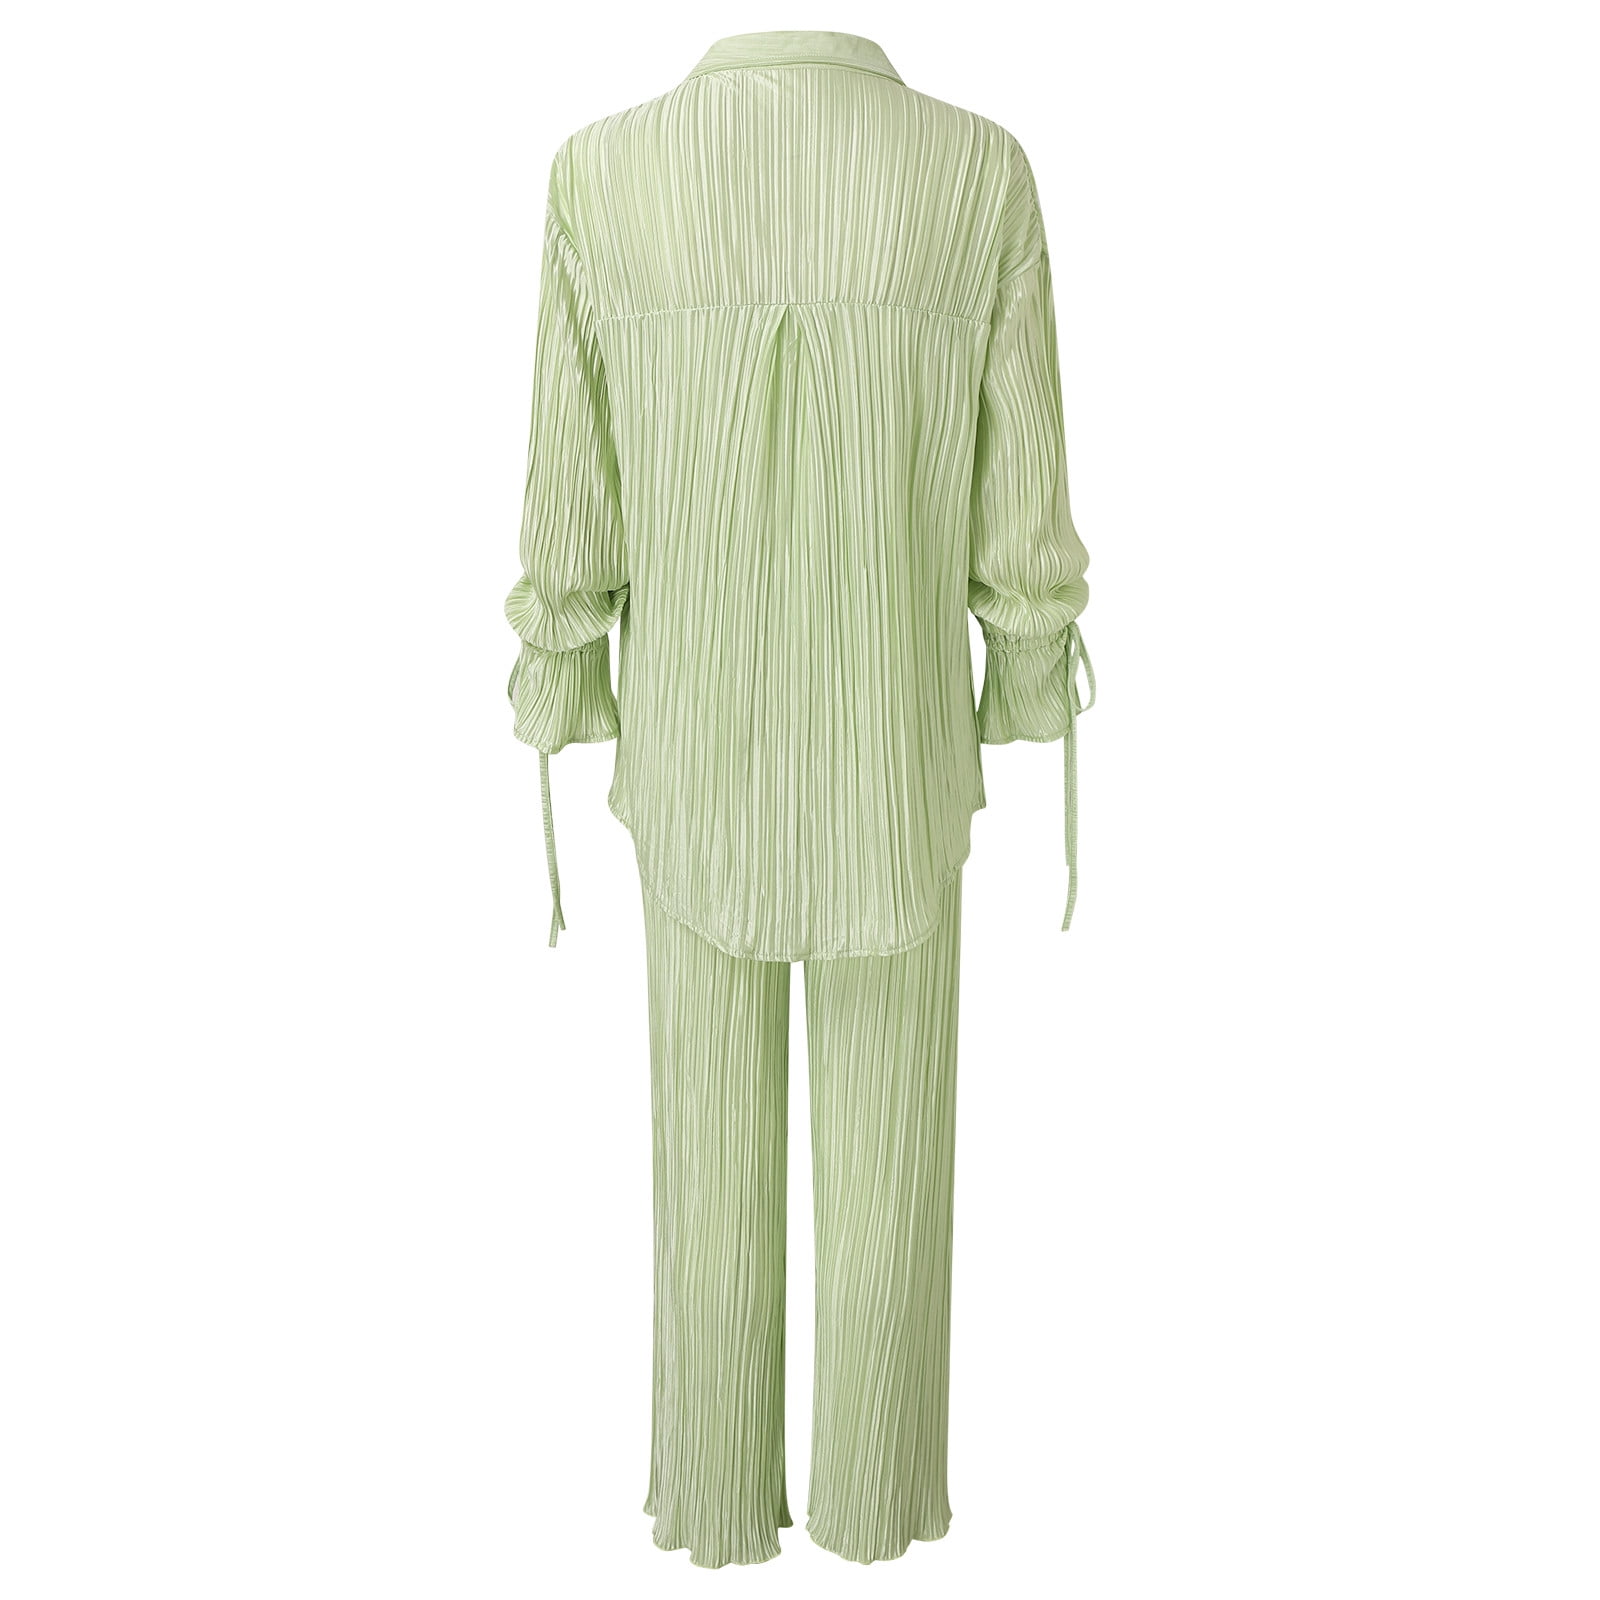 Lisingtool Pajamas for Women Set Women Casual Lapel Button Plaid Print Two  Piece Long Sleeve Pajamas Pajamas Suit Pajama Pants Pink 